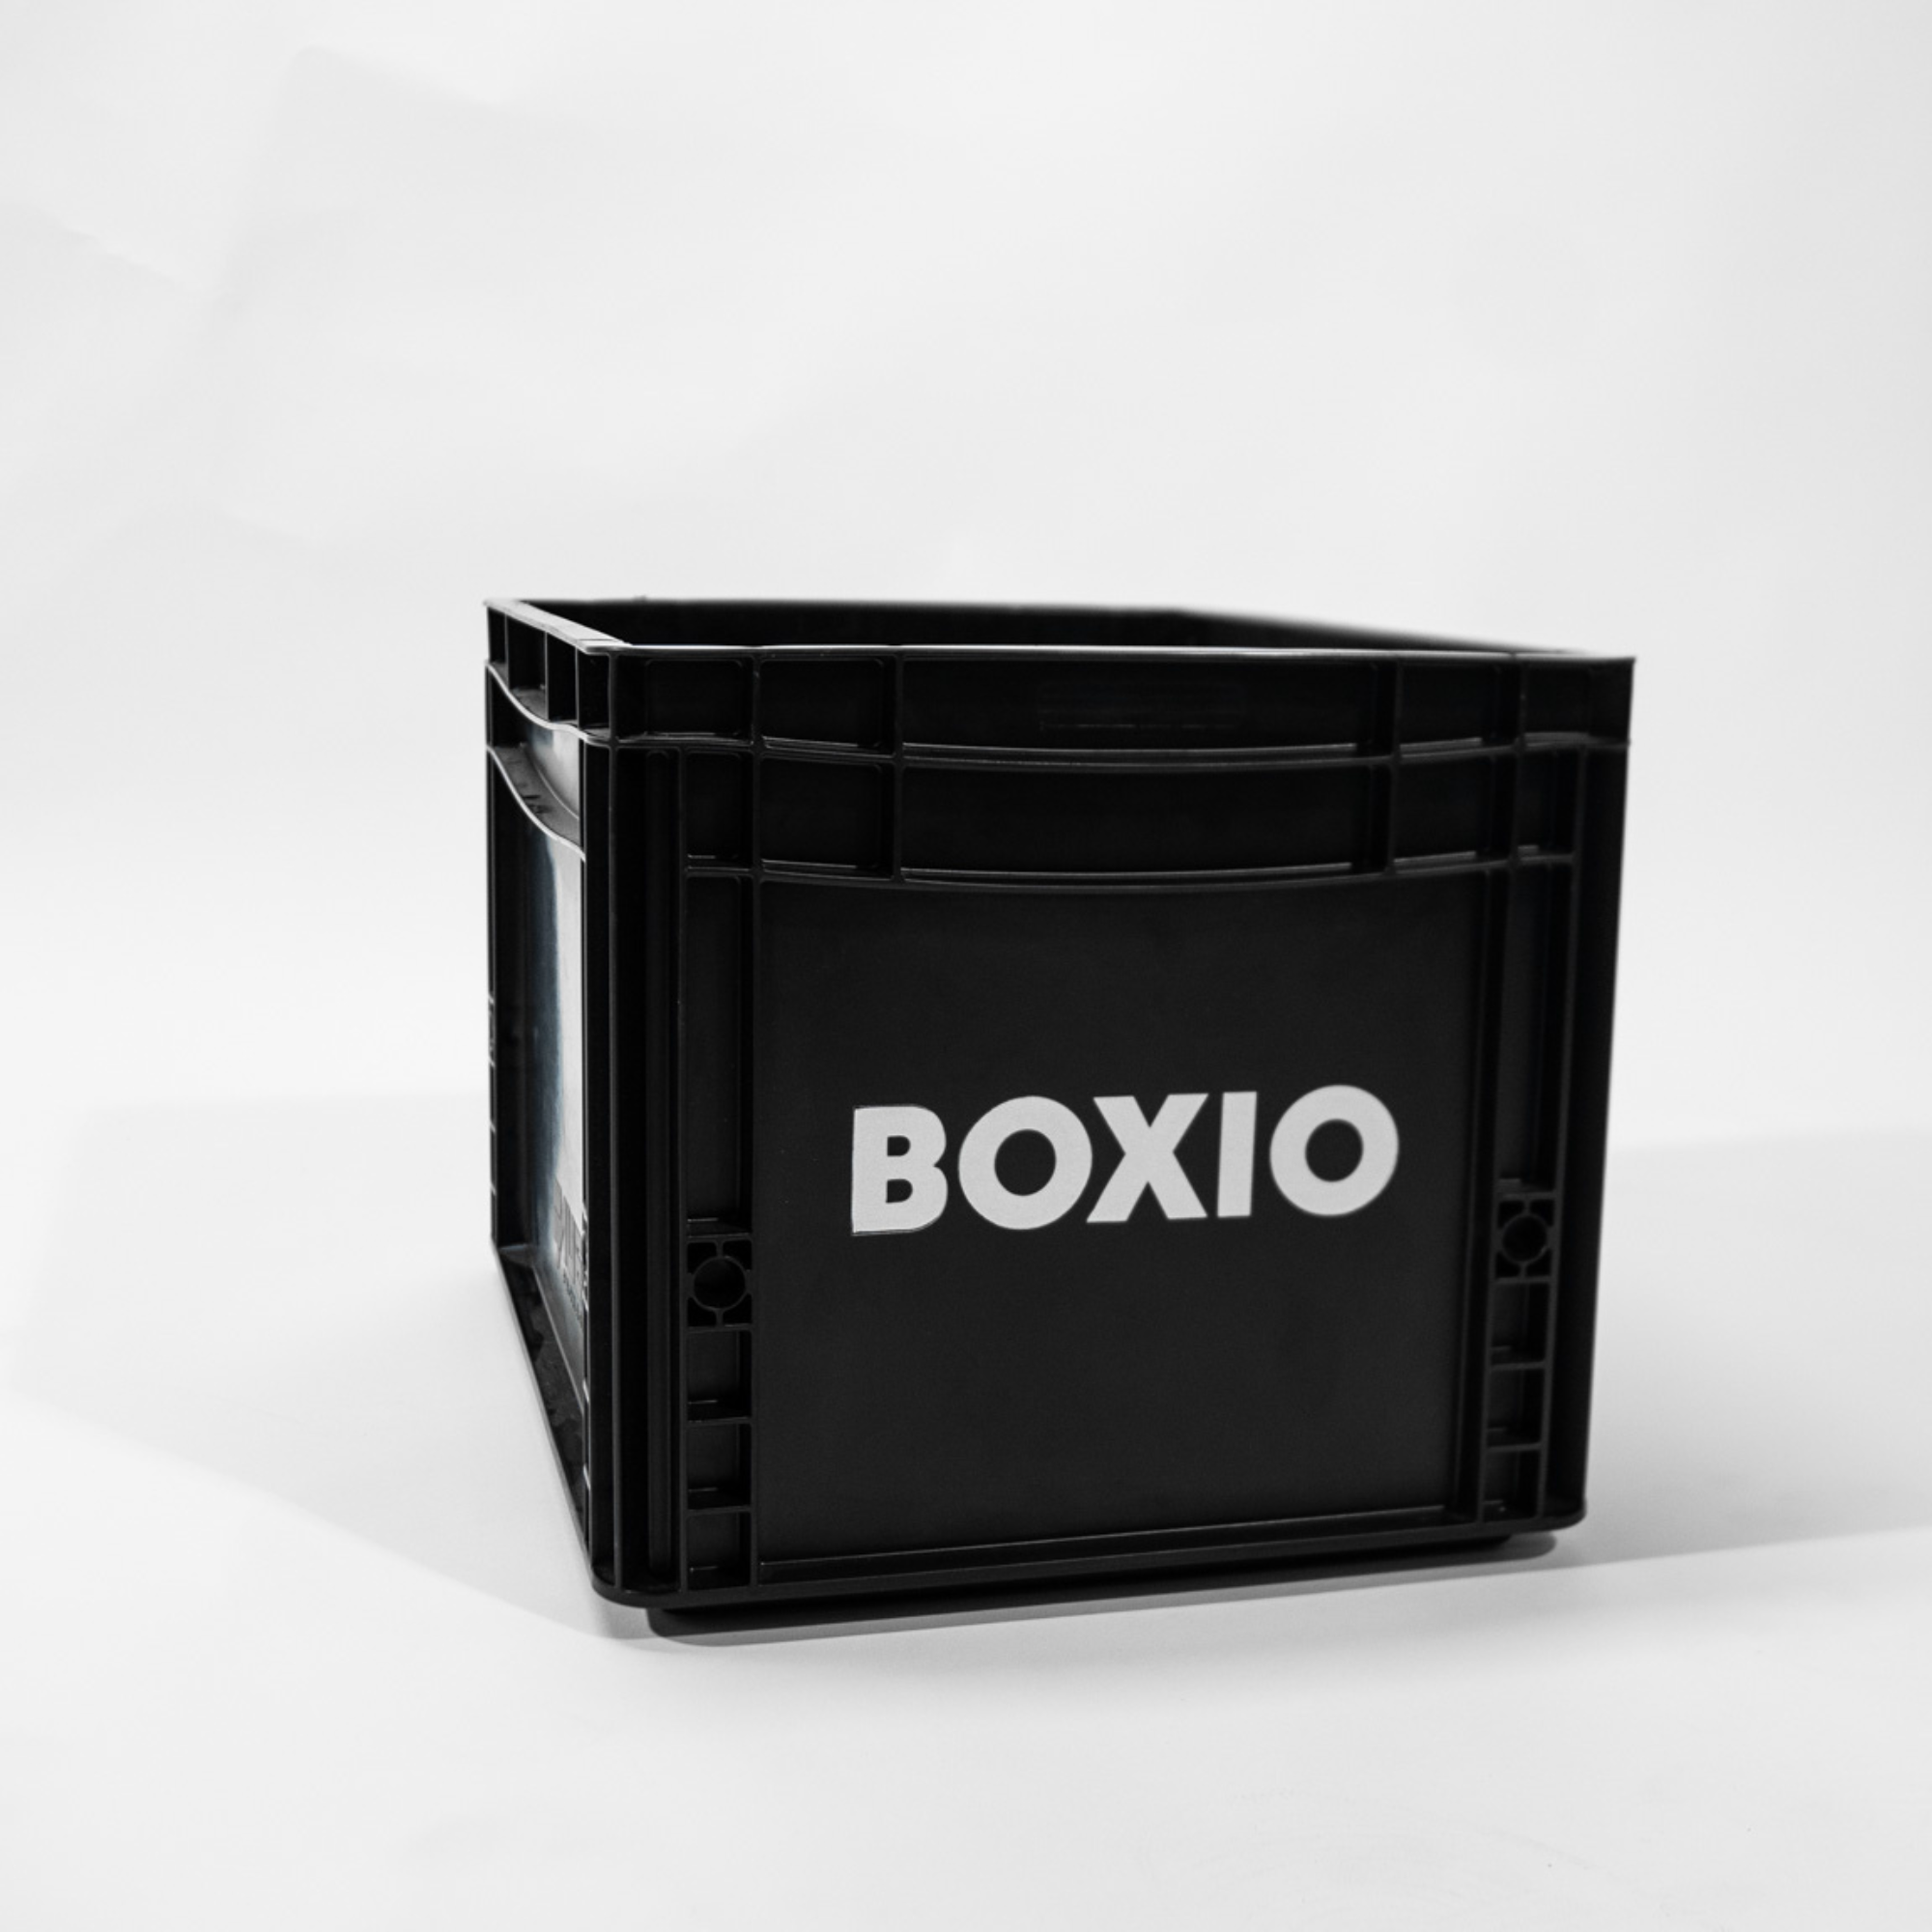 Eurobox "BOXIO" met boorgaten voor BOXIO - TOILET